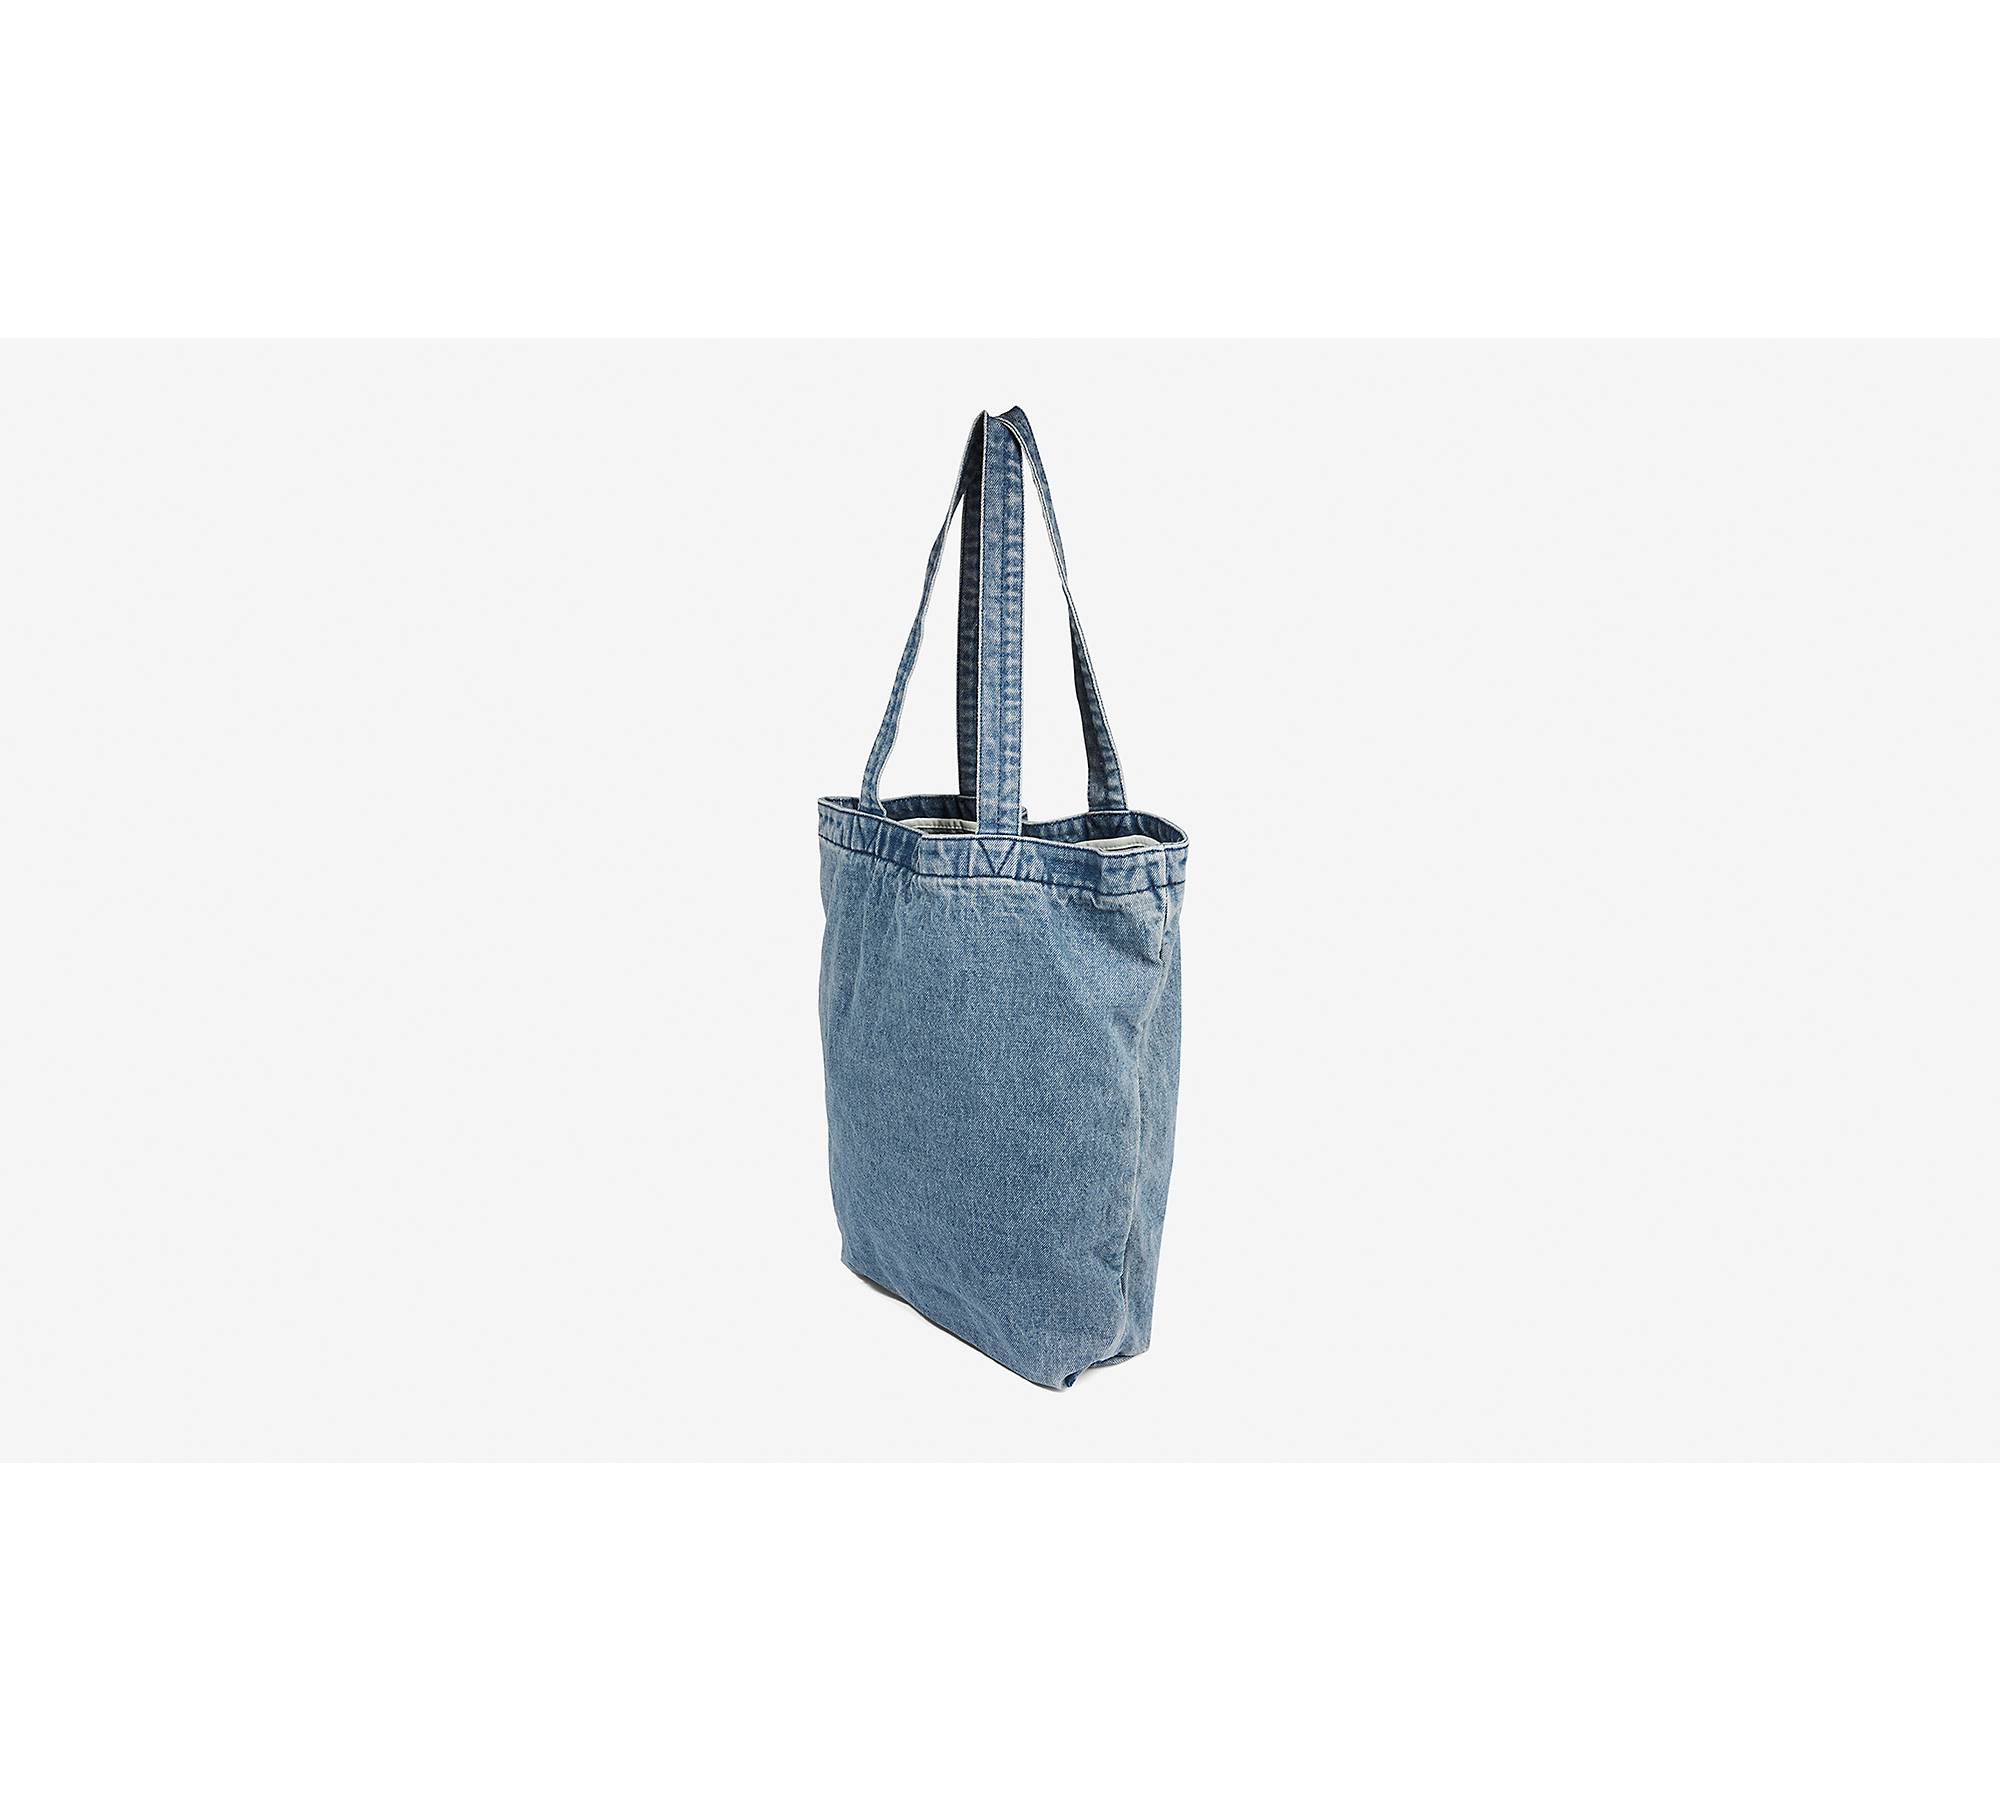 Levi's Back Pocket Denim Tote Bag in Blue